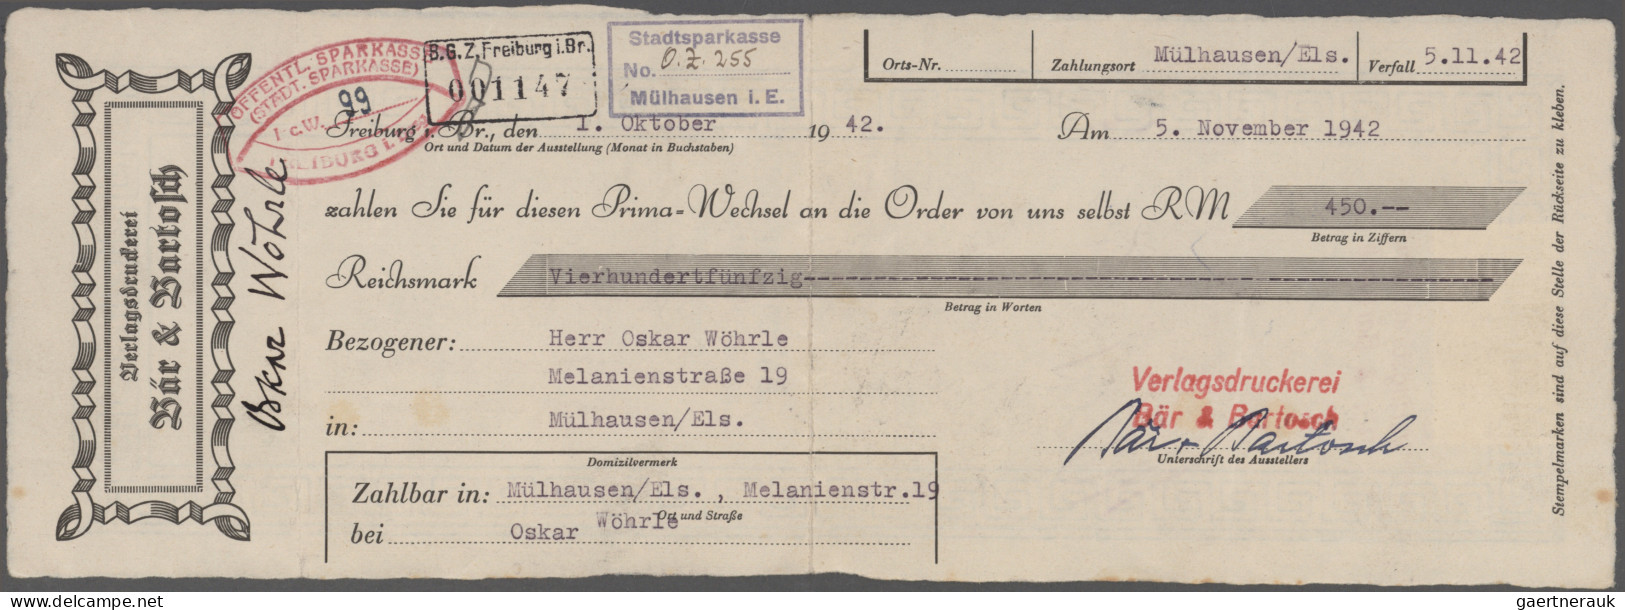 Thematics: Printing-writers, Authors: 1914/1943 (ca.), Bestand Von Einigen Hunde - Schriftsteller